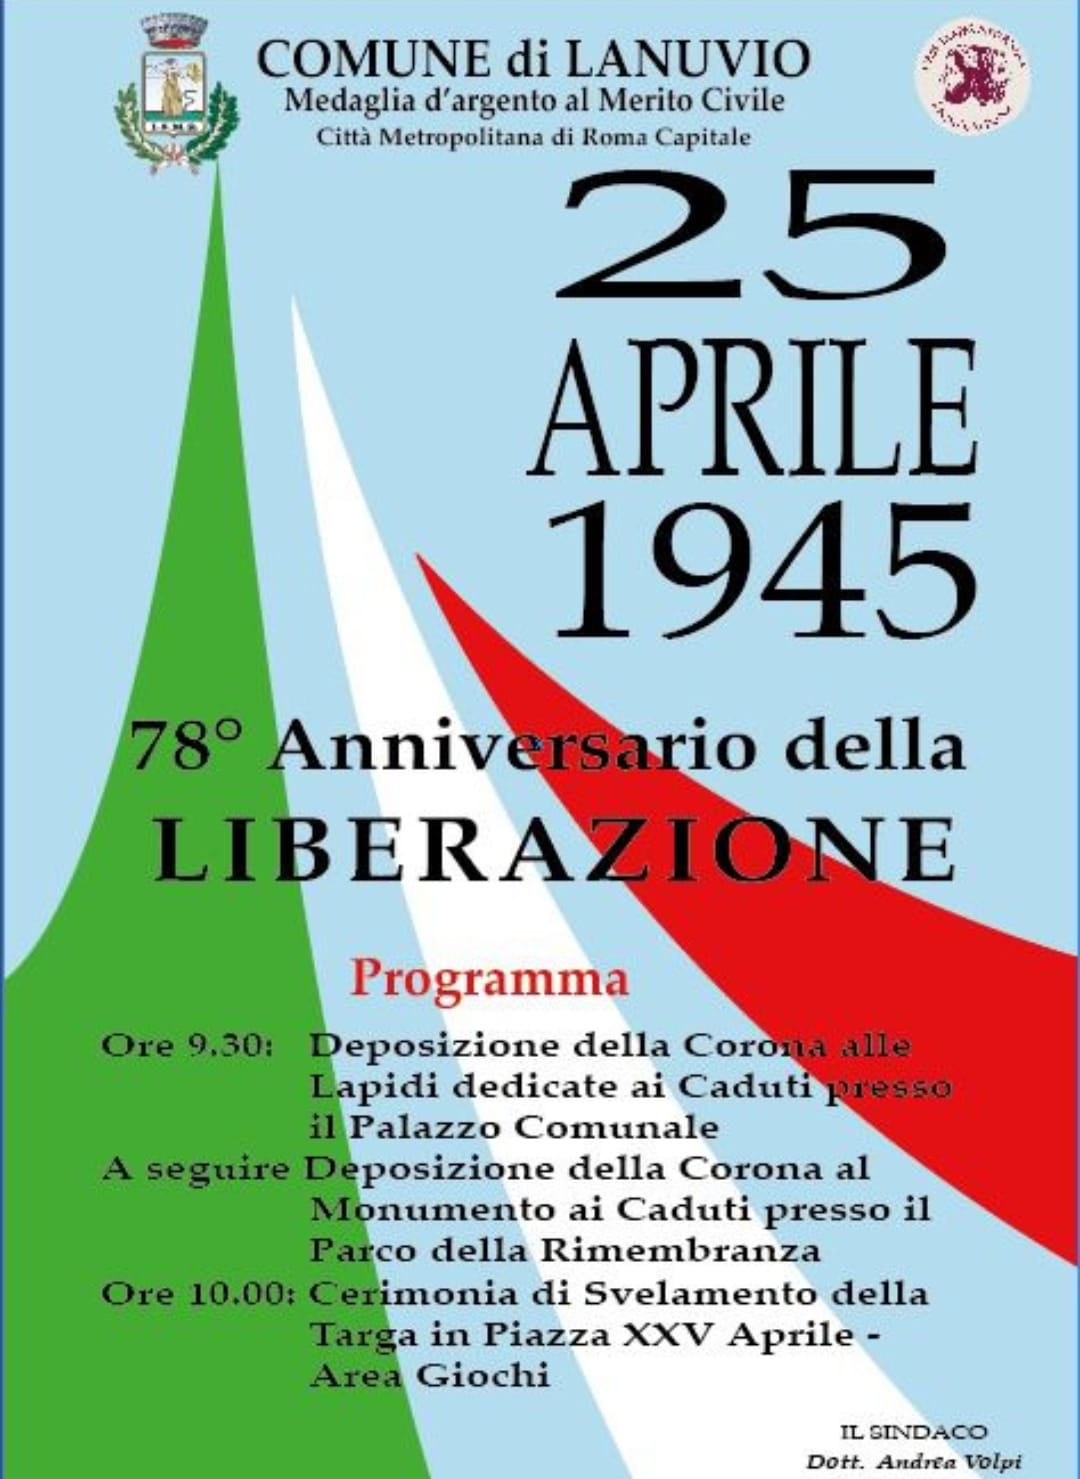 25 Aprile,queste le celebrazioni del Comune di Lanuvio.